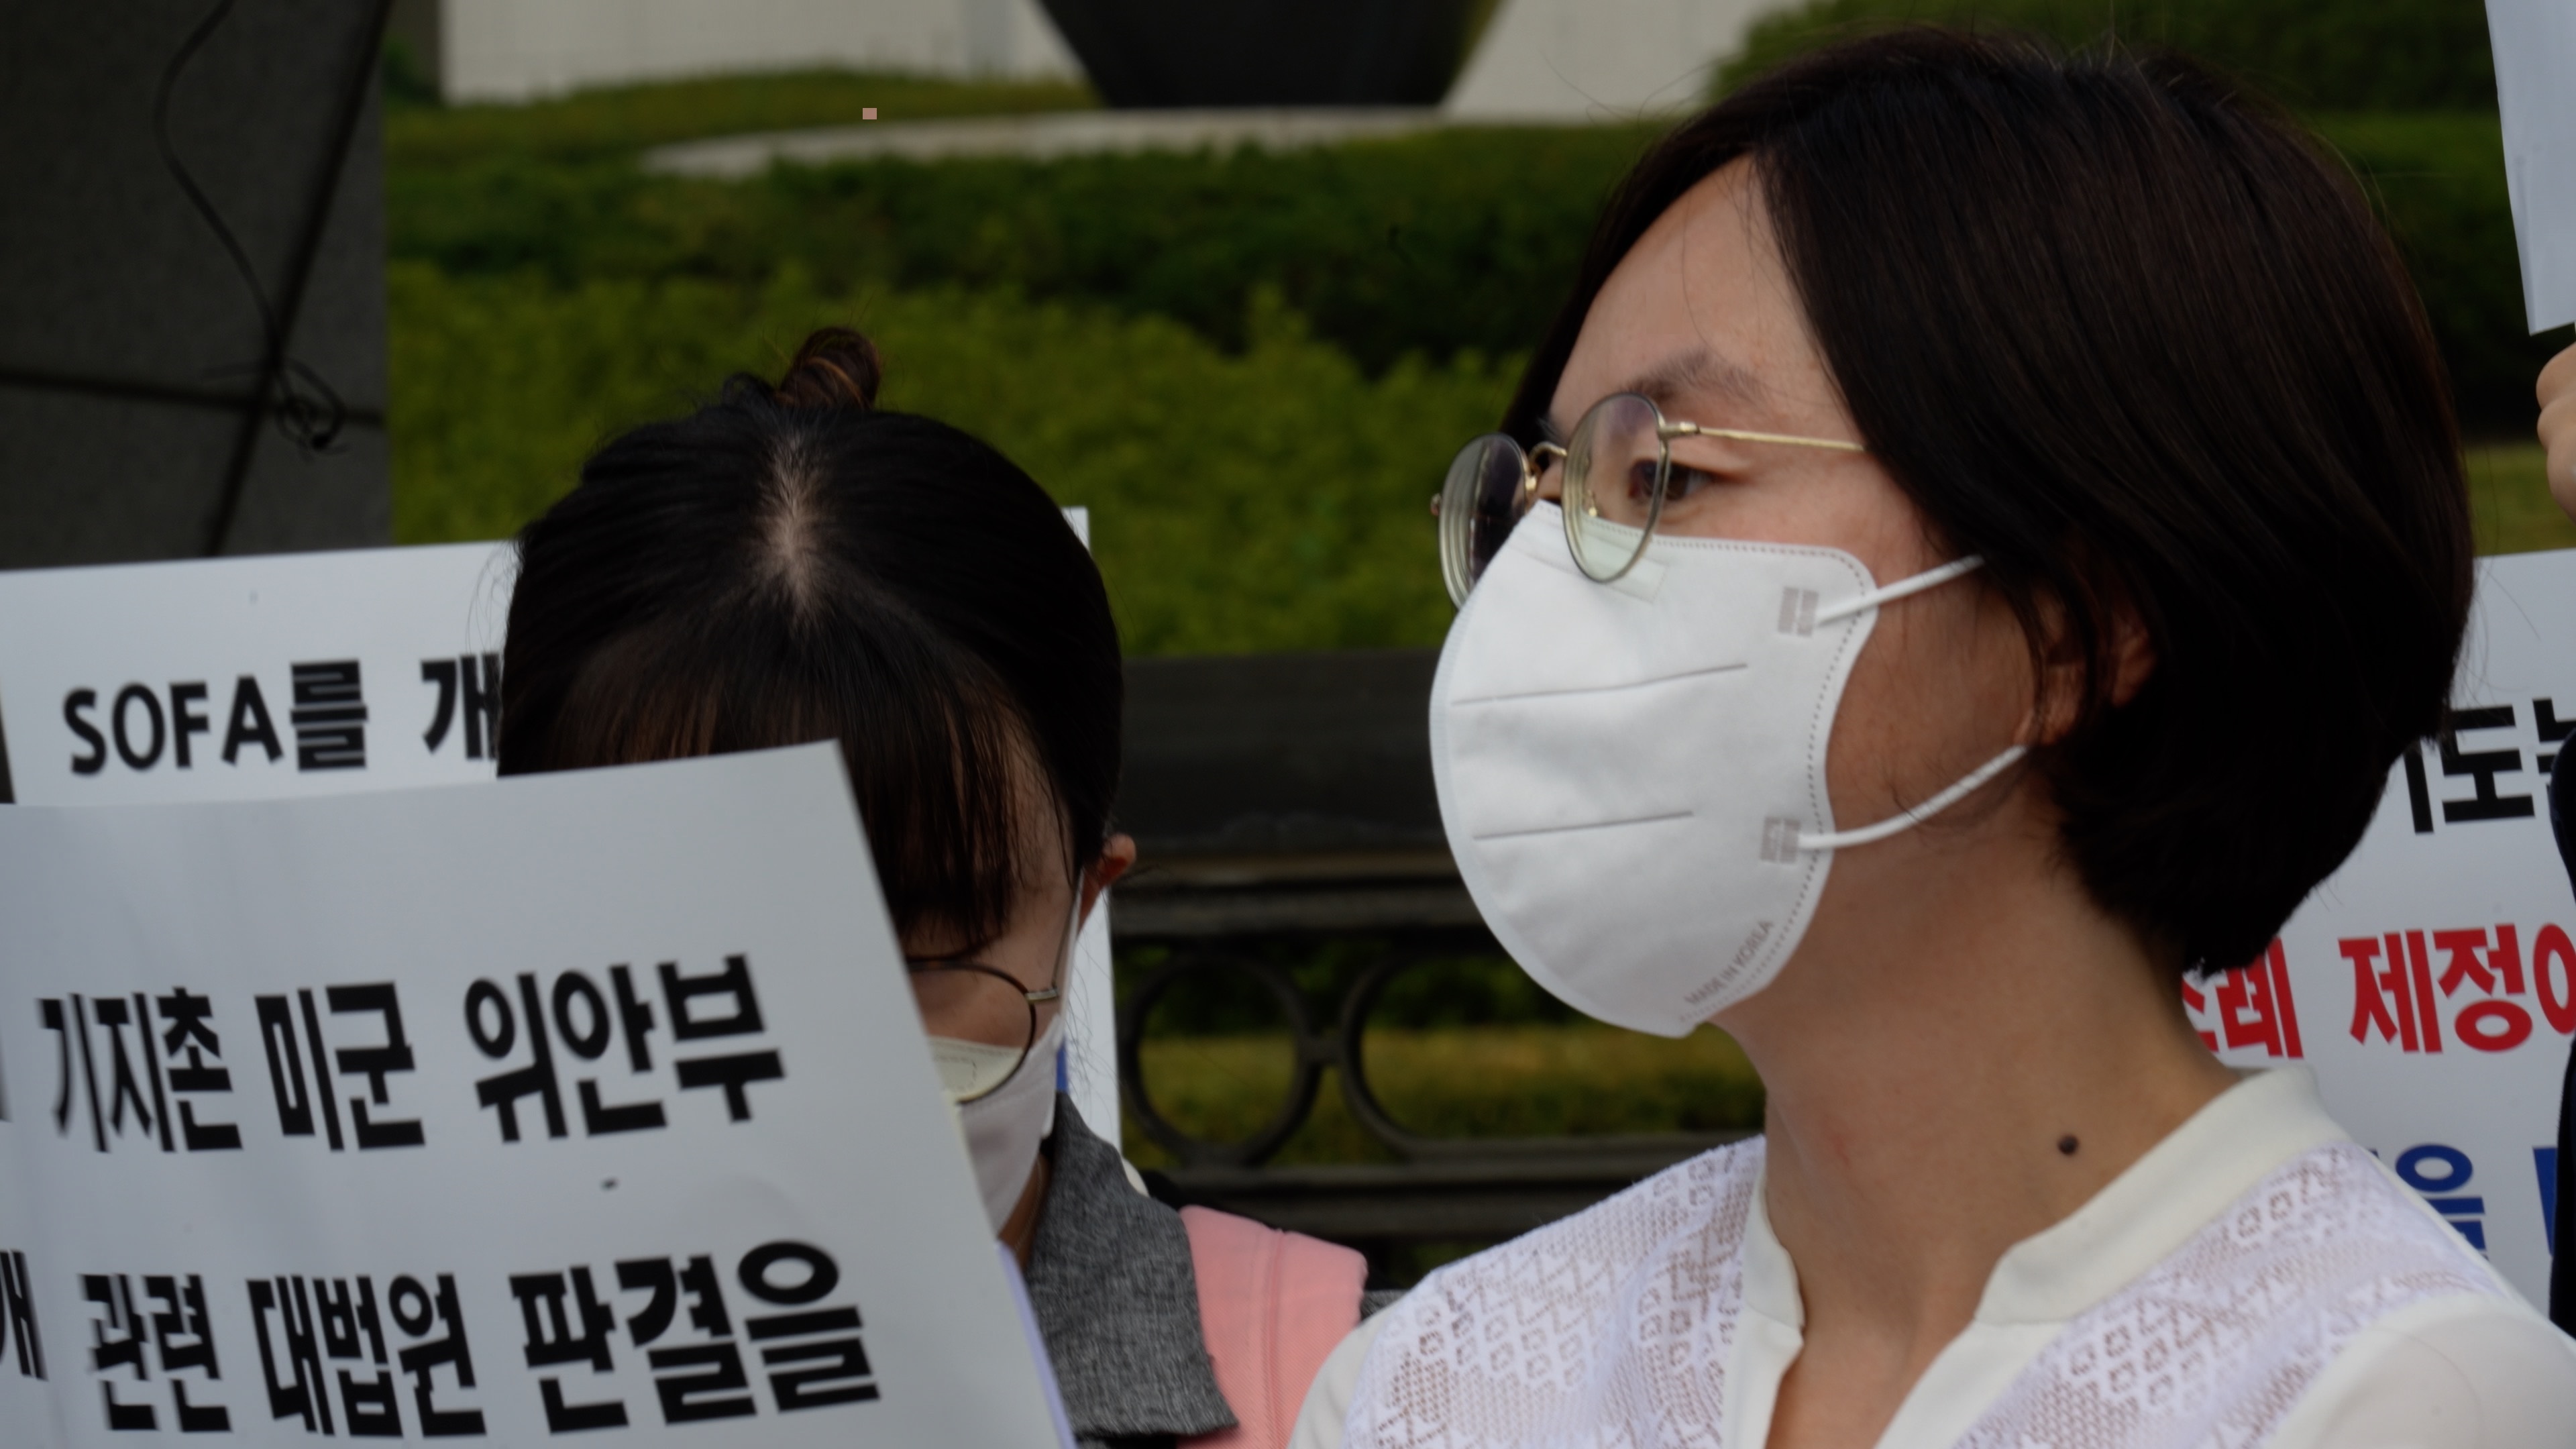 지난 9월 29일 대법원 정문 앞에서 열린 기자회견에 참석한 박정미 교수 ⓒ이고운